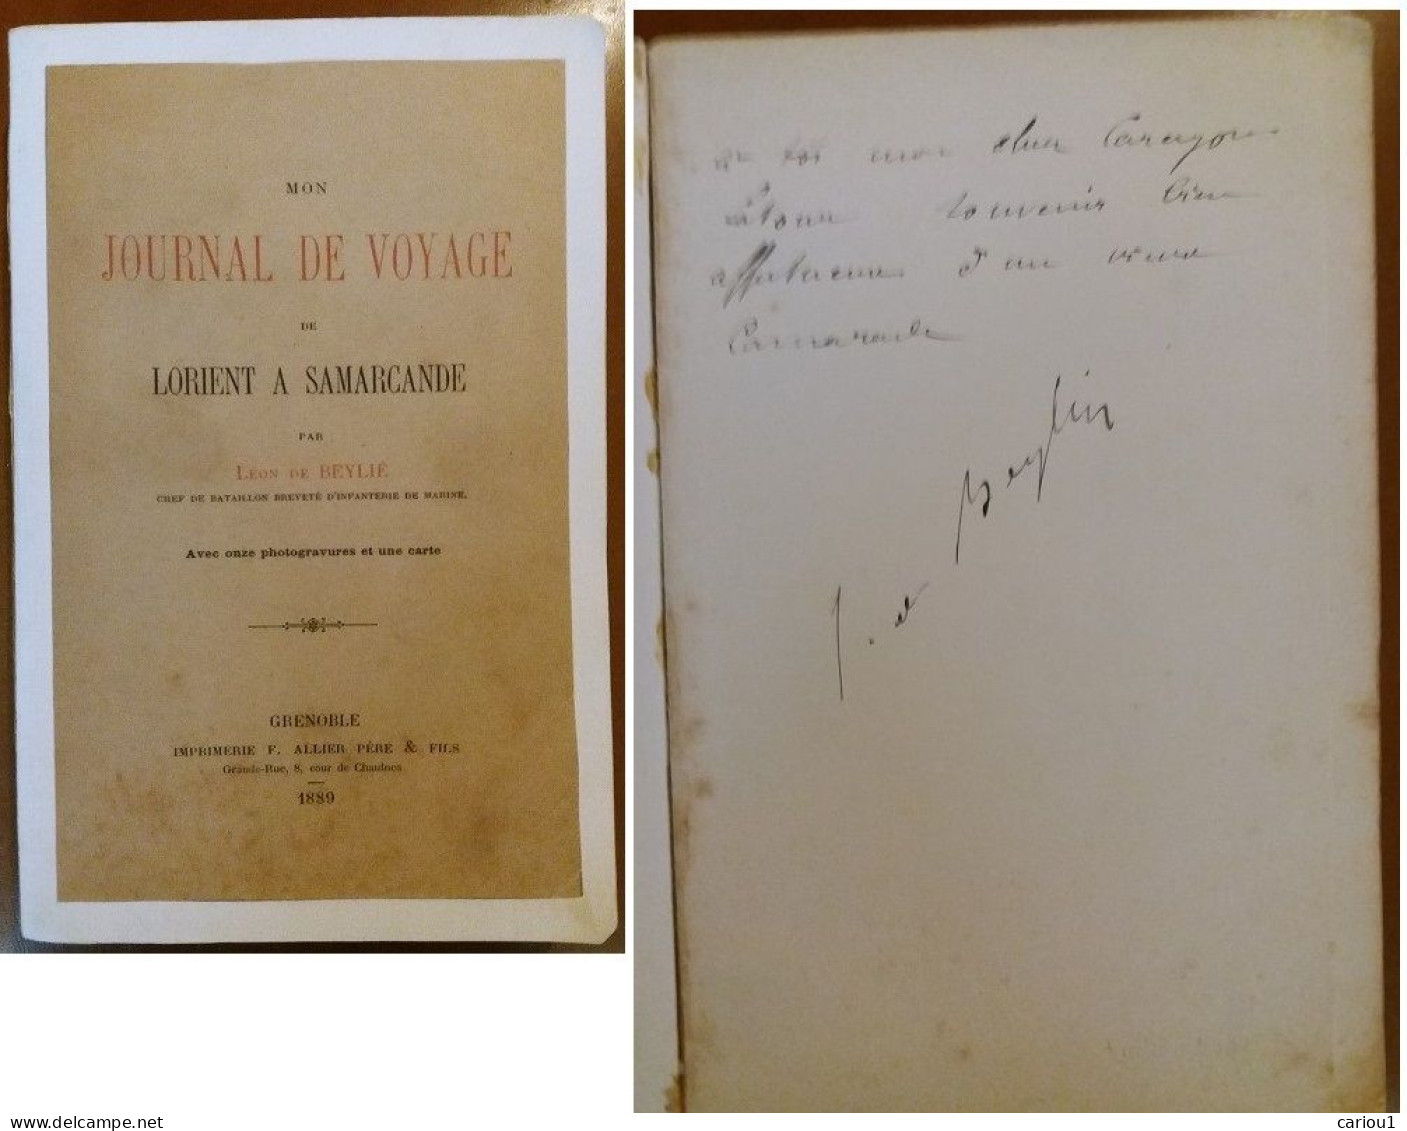 C1 Leon De BEYLIE Voyage LORIENT SAMARCANDE Musee GRENOBLE Signed DEDICACE Envoi Port Inclus France - Autographed